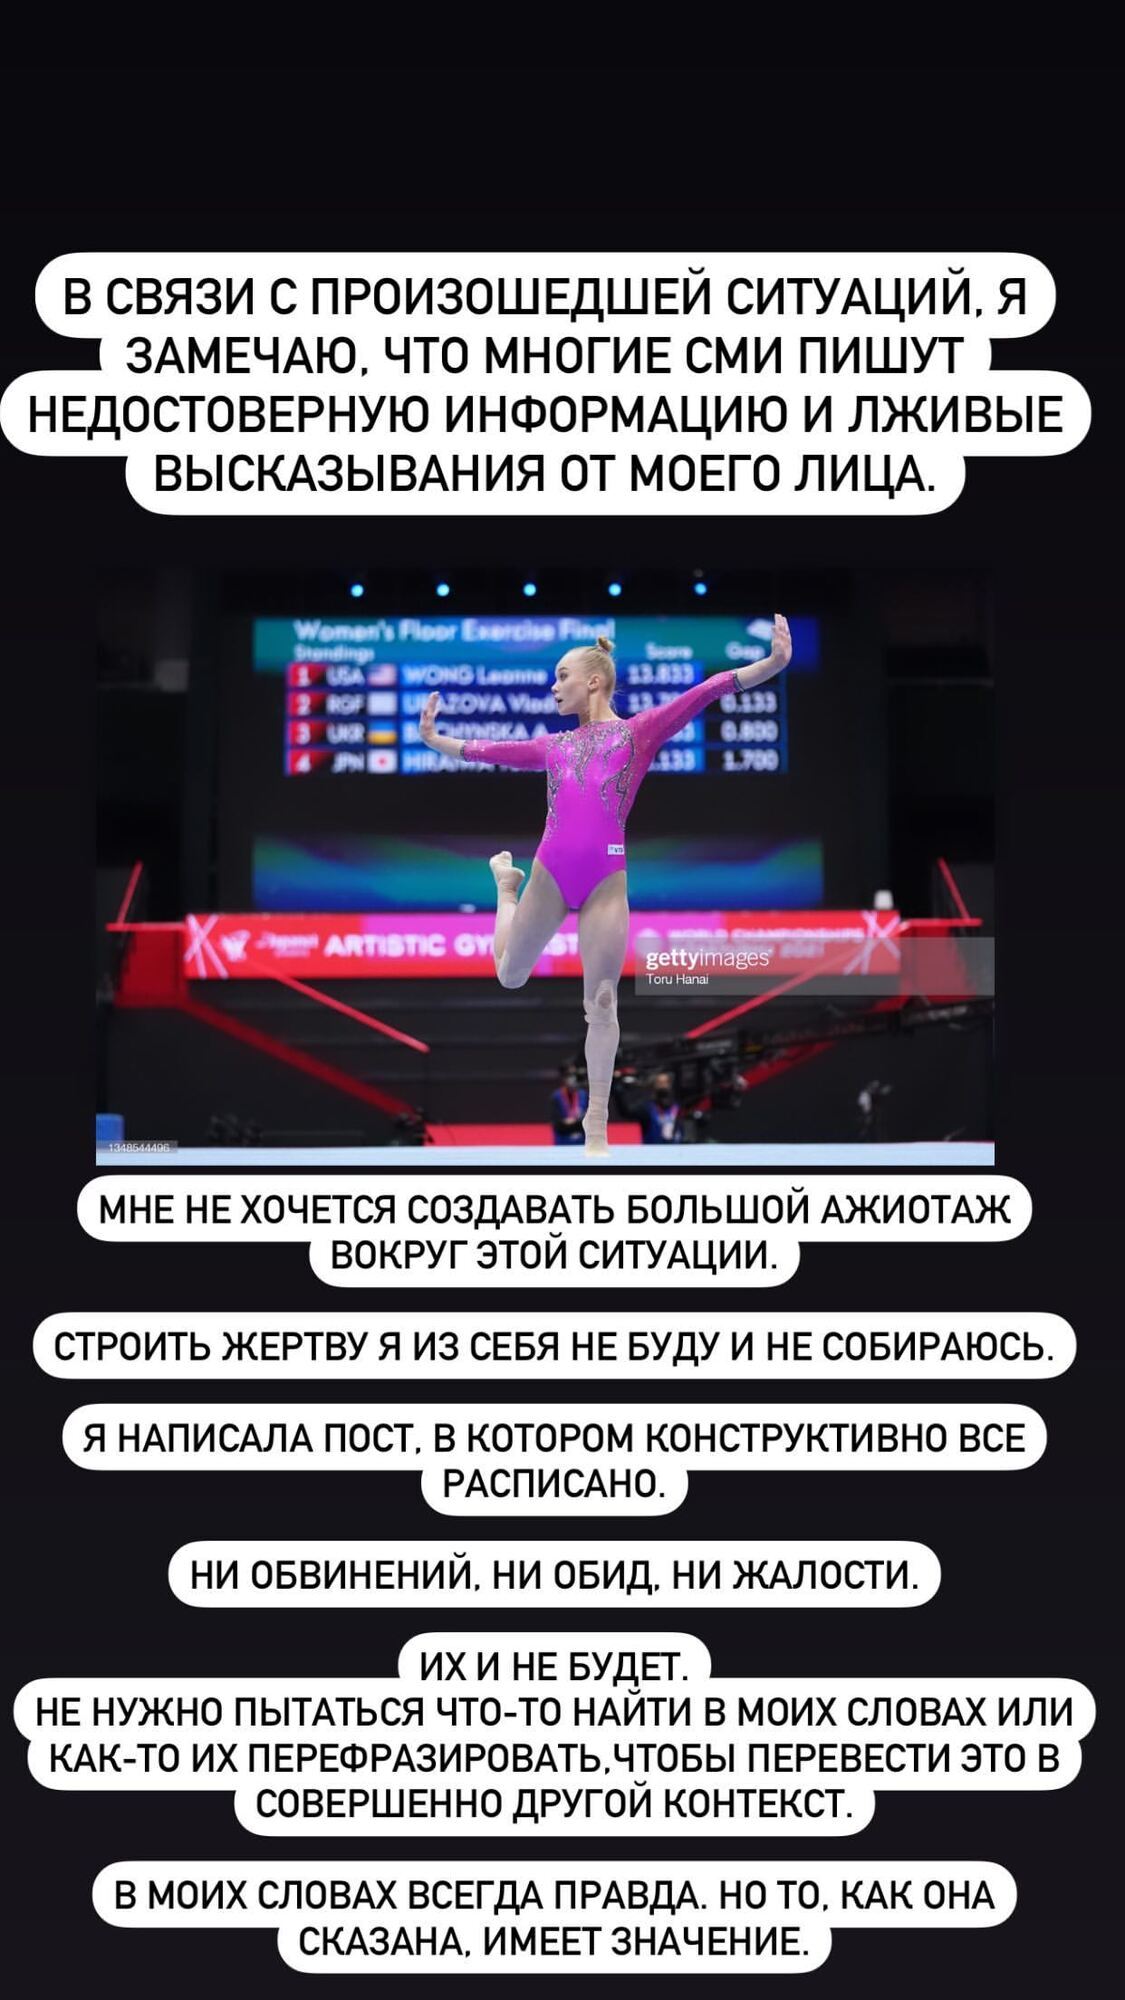 Ангелина Мельникова о своих словах в СМИ.